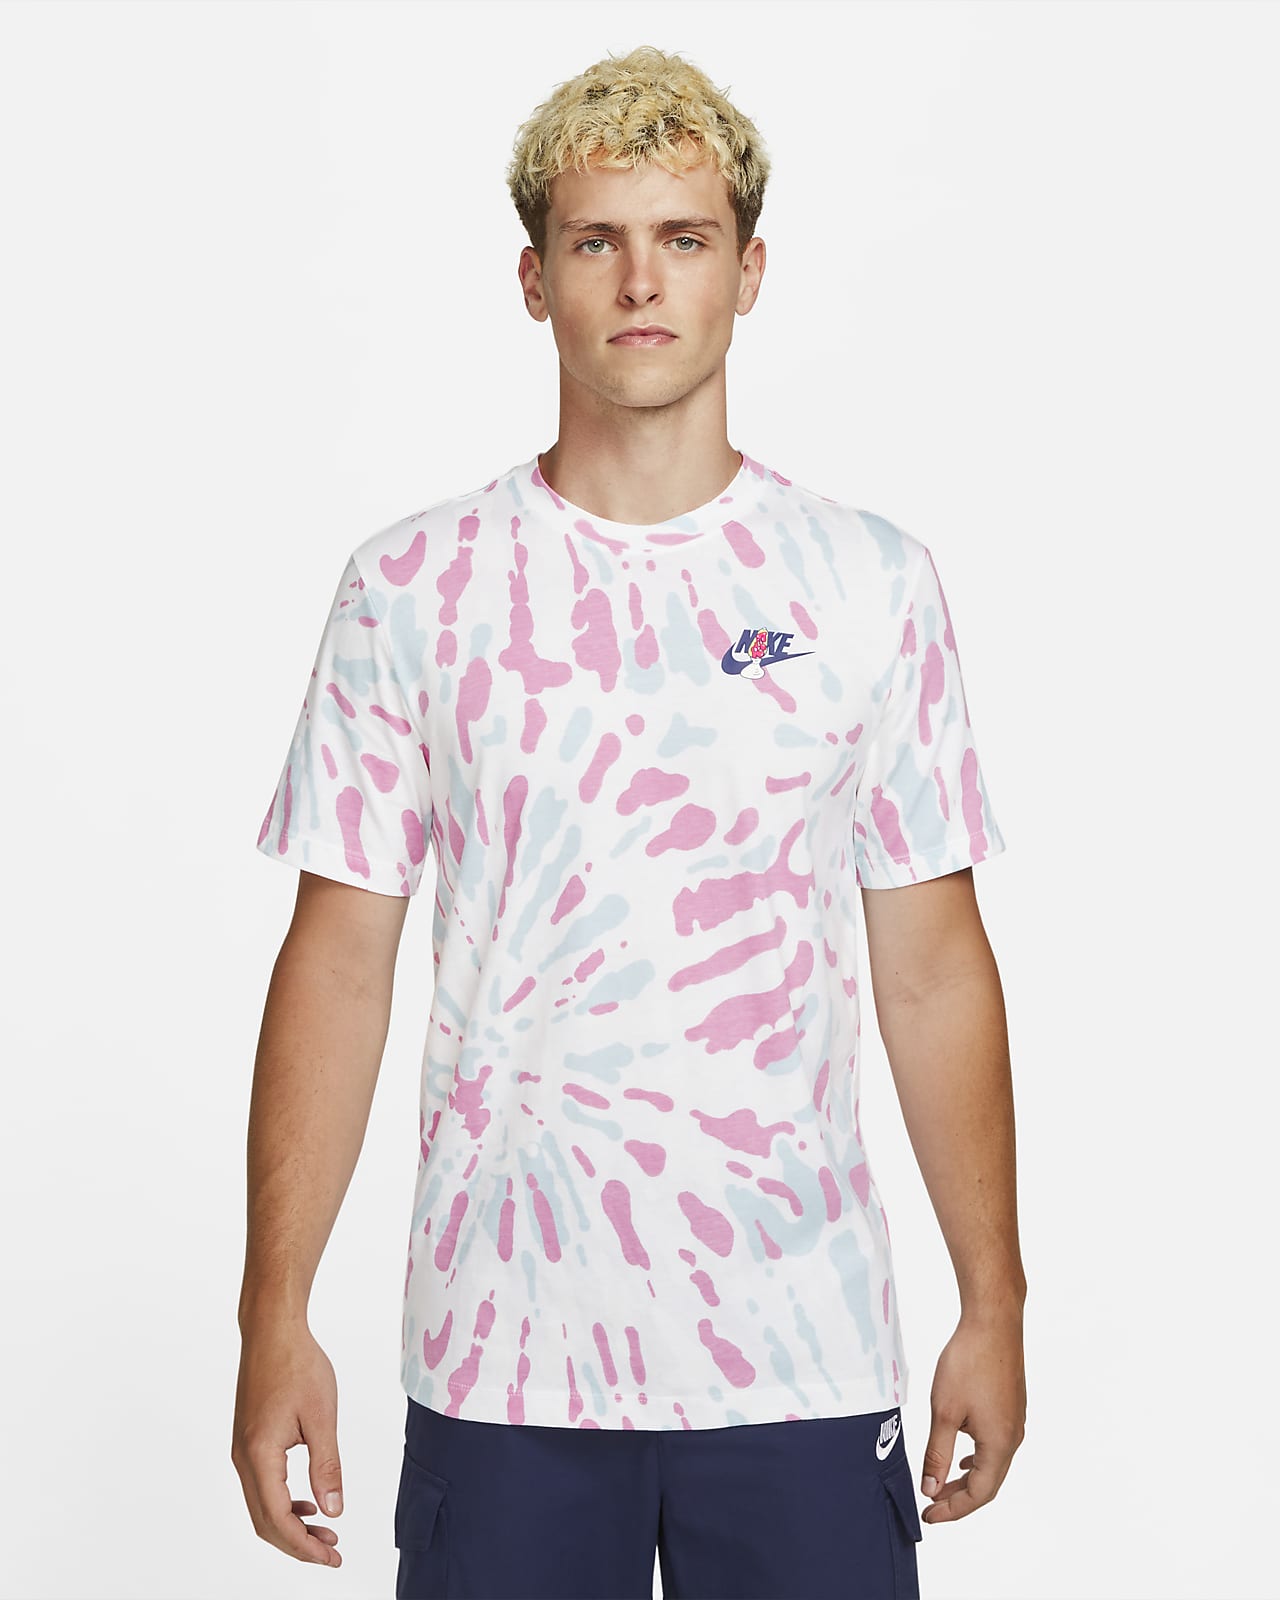 Nike Sportswear Men's Tie-Dye T-Shirt.